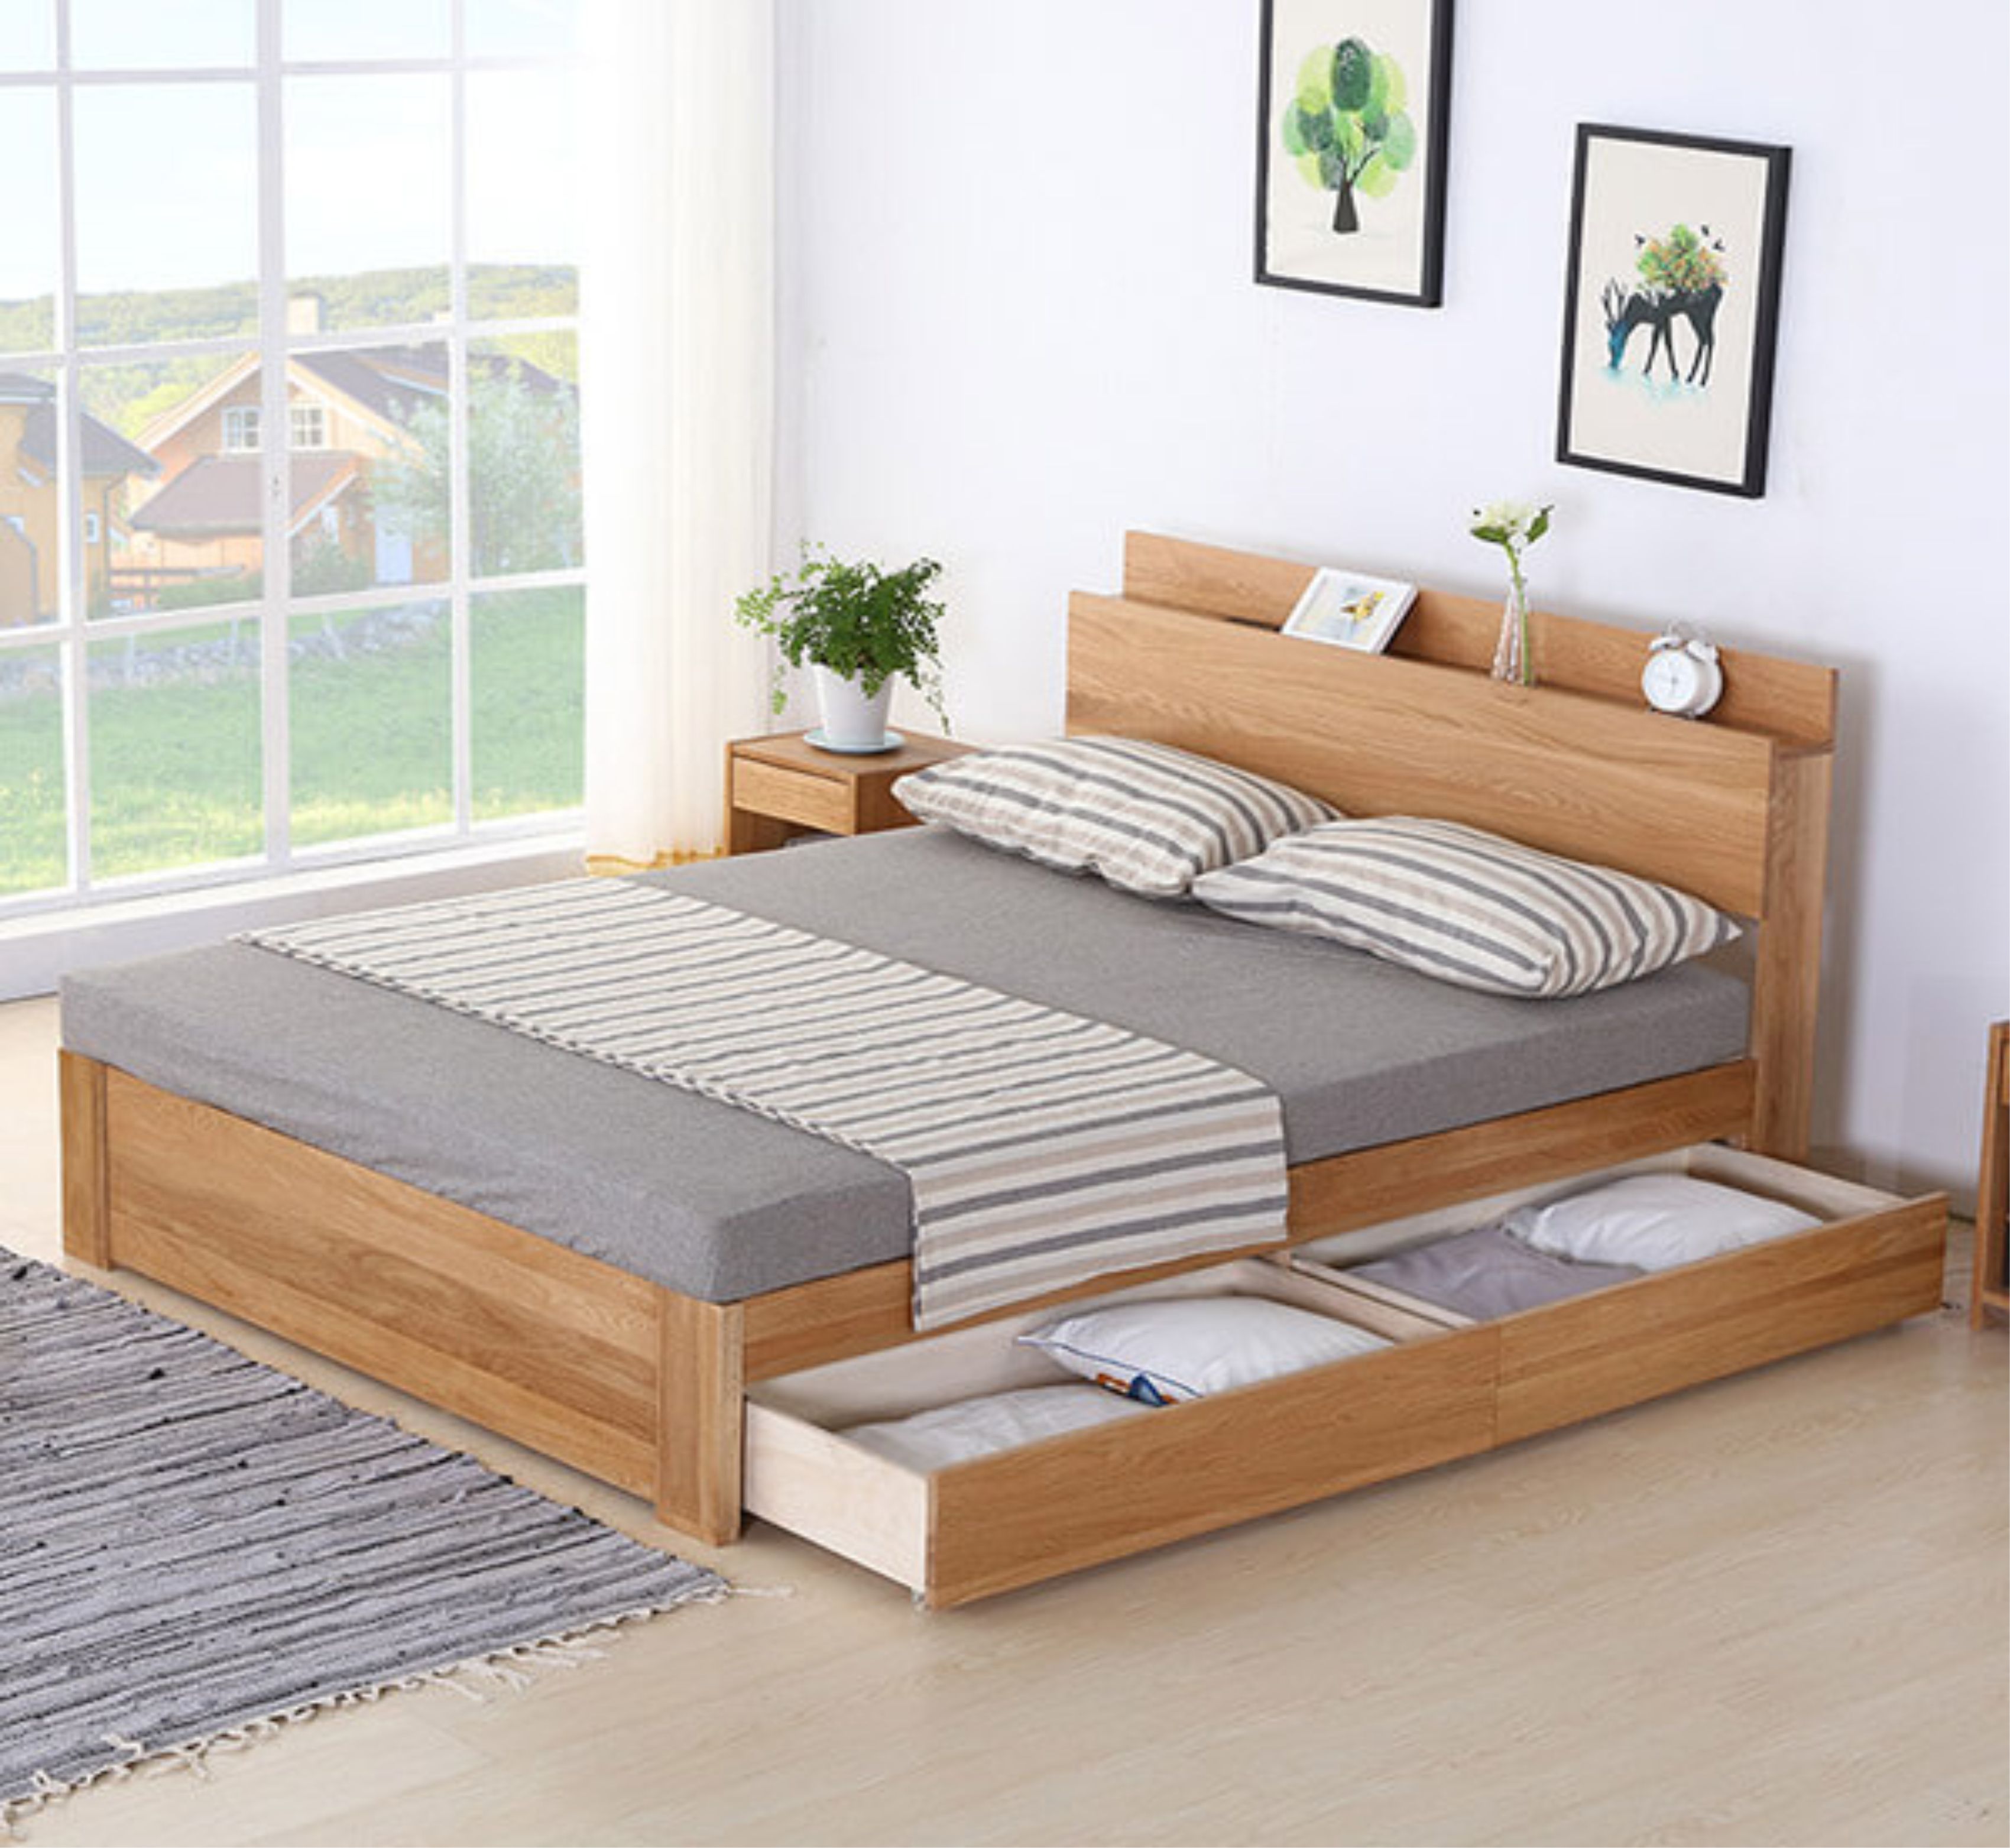 Giường ngủ có ngăn kéo giá rẻ – Mẫu giường ngủ thông minh trong ...